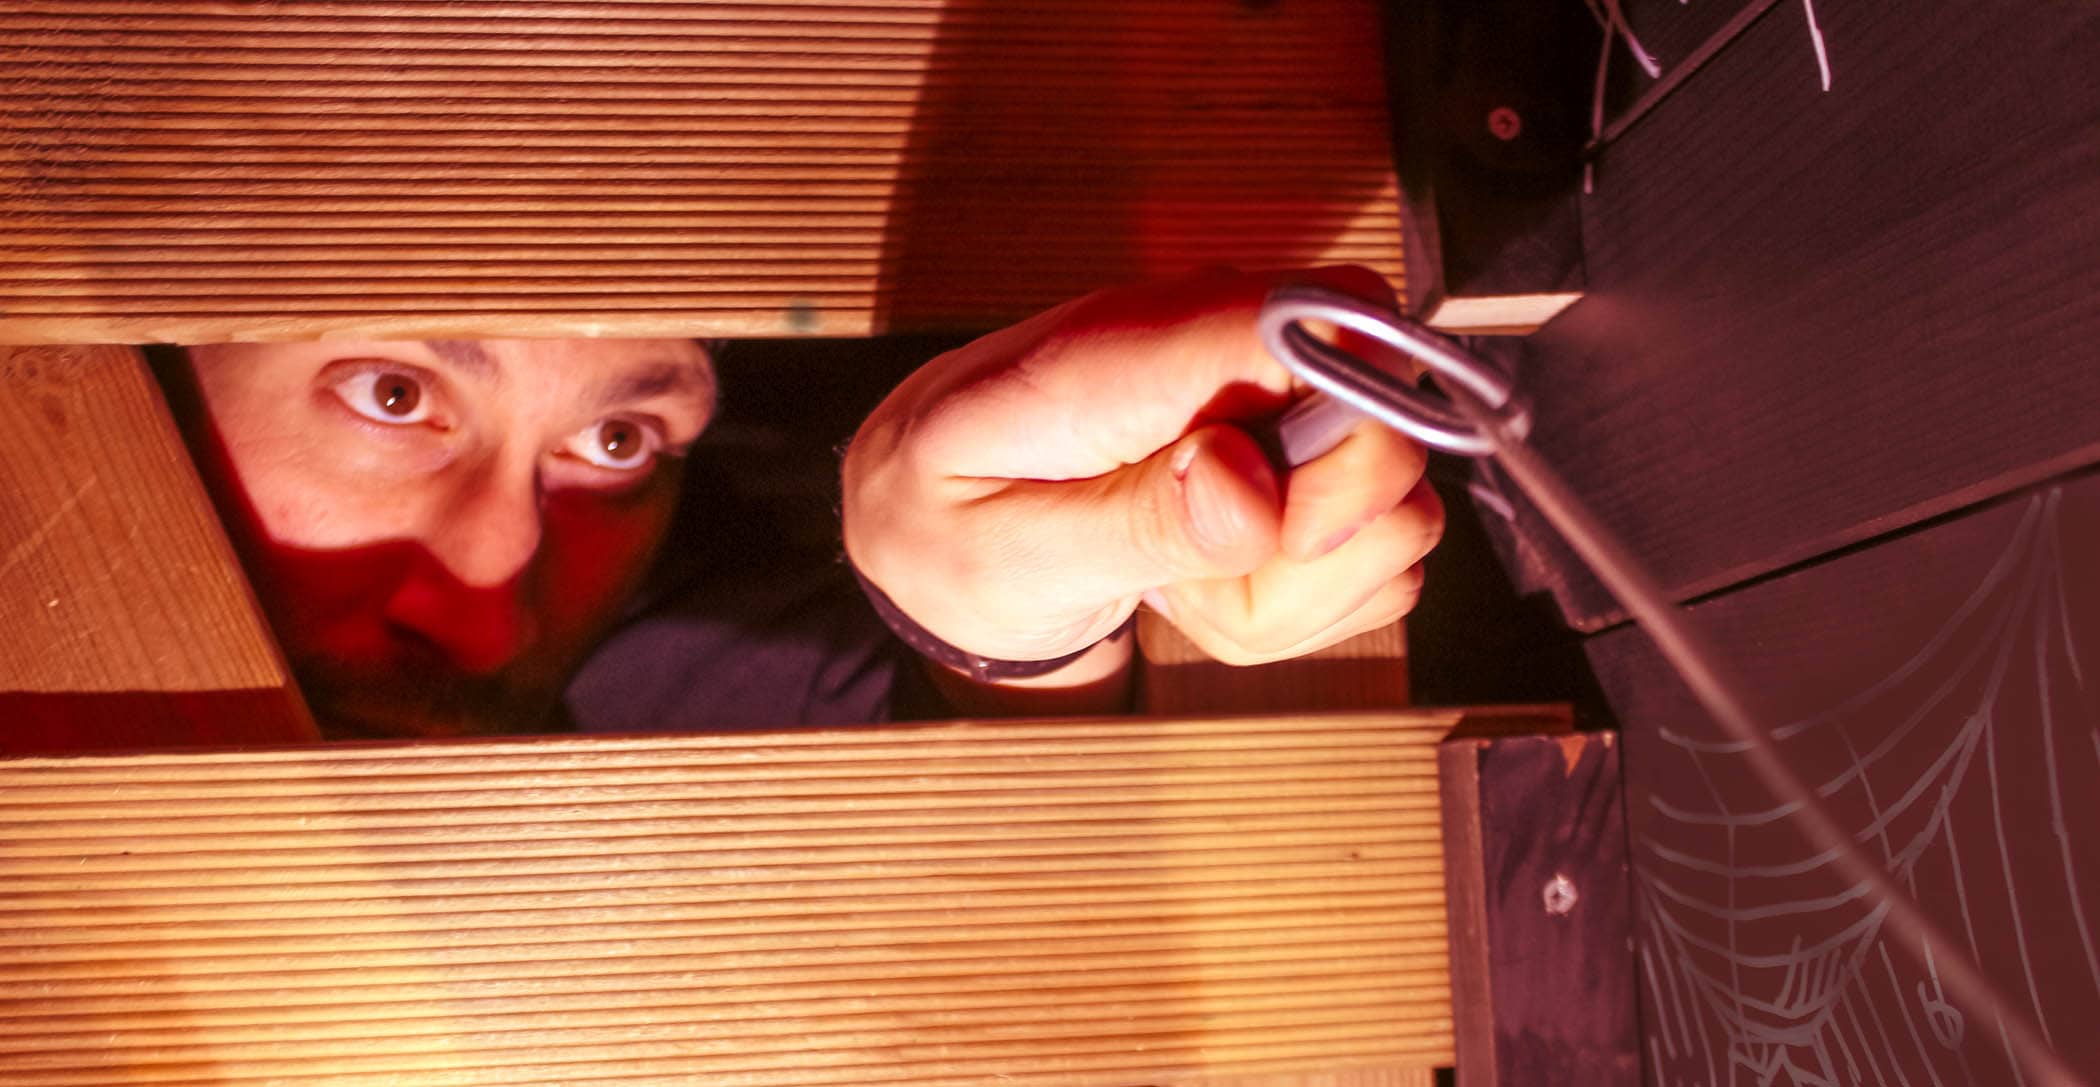 Un joueur, enfermé dans une pièce d'escape game, récupère une clé à travers plusieurs planche de bois pour s'échapper !